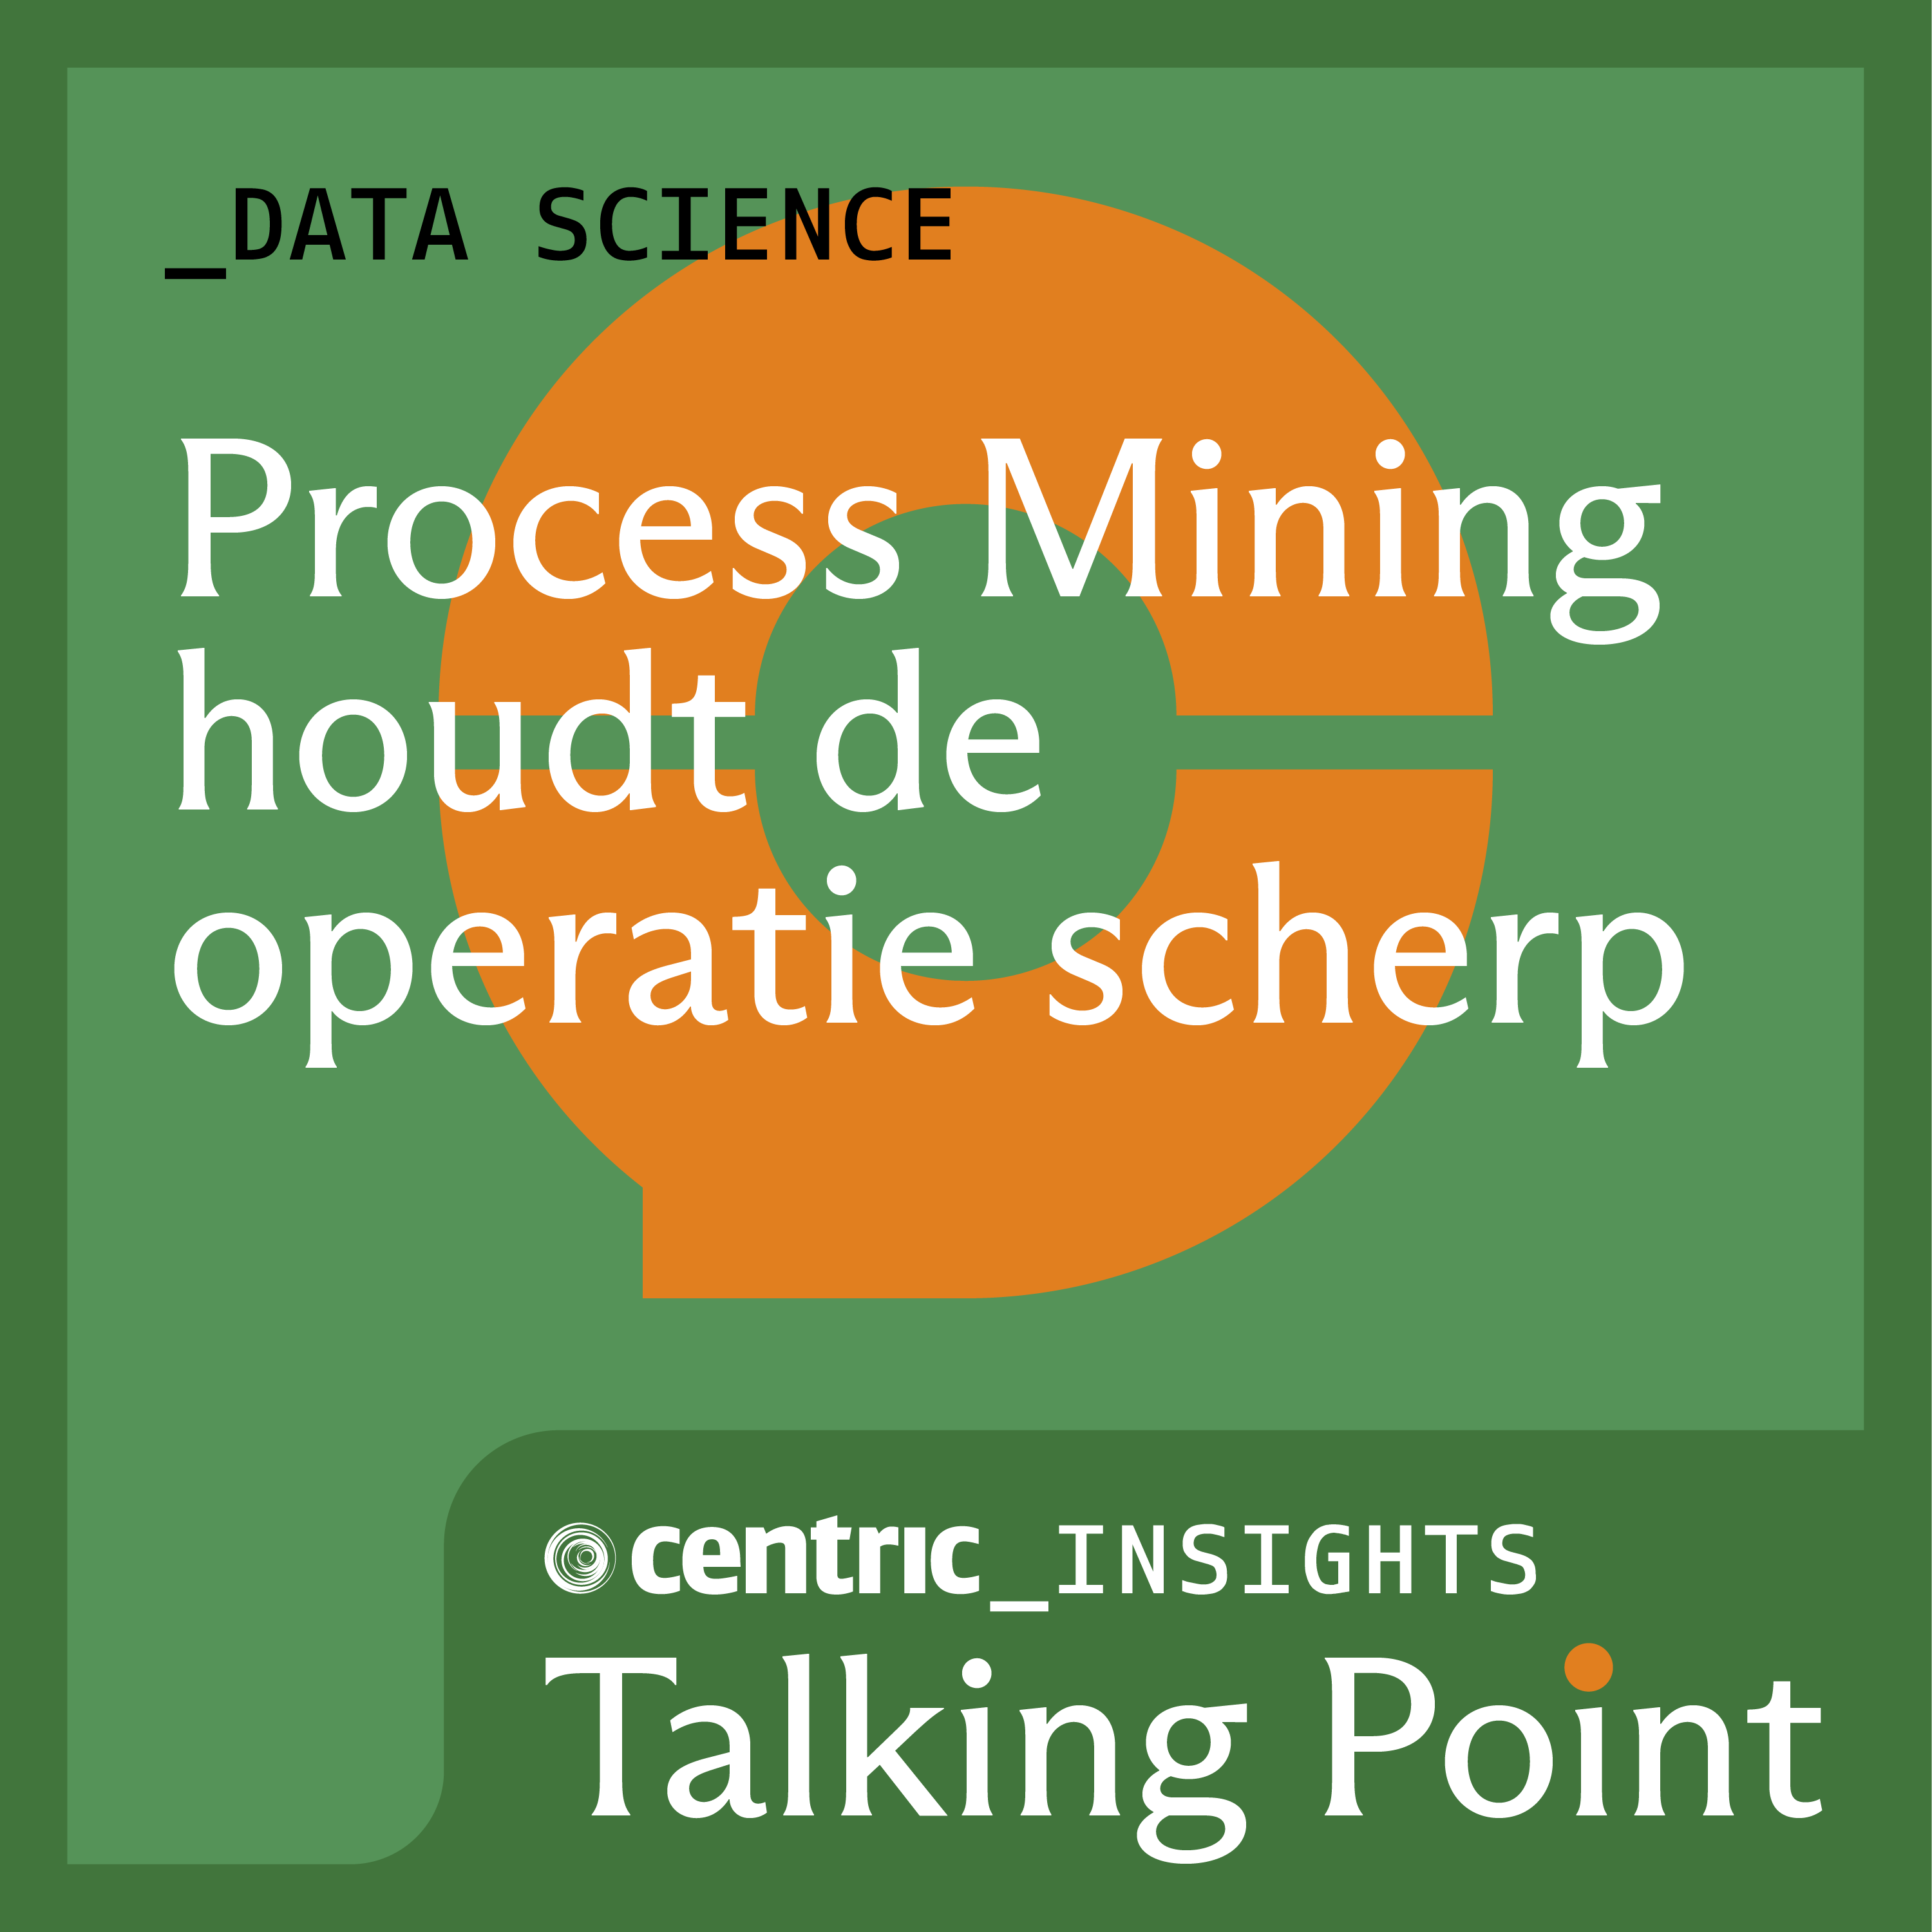 Process Mining houdt de operatie scherp